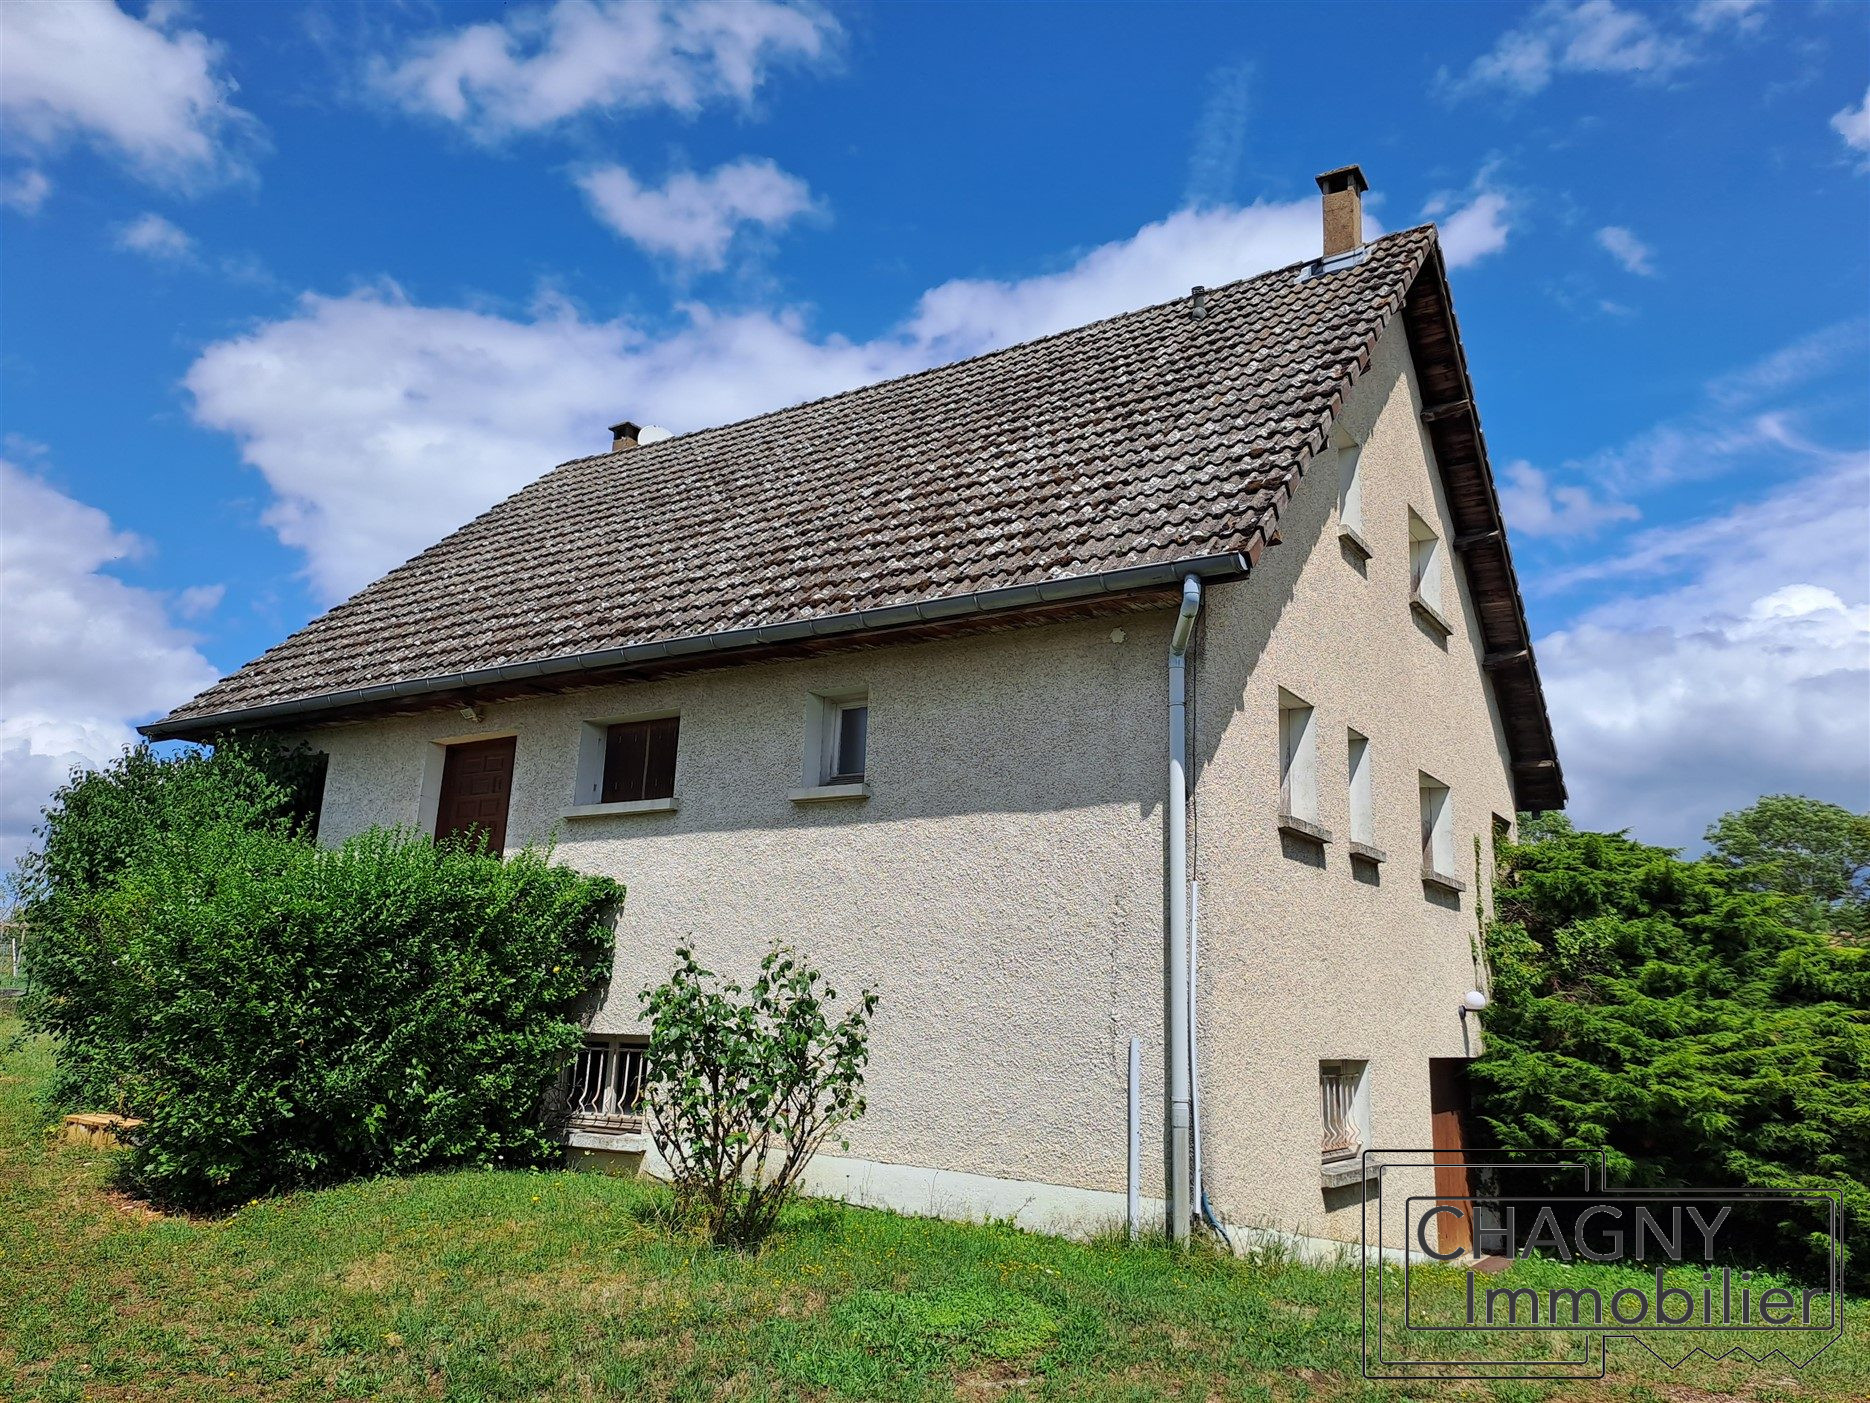 Vente Maison 150m² 6 Pièces à Chagny (71150) - Chagny Immobilier